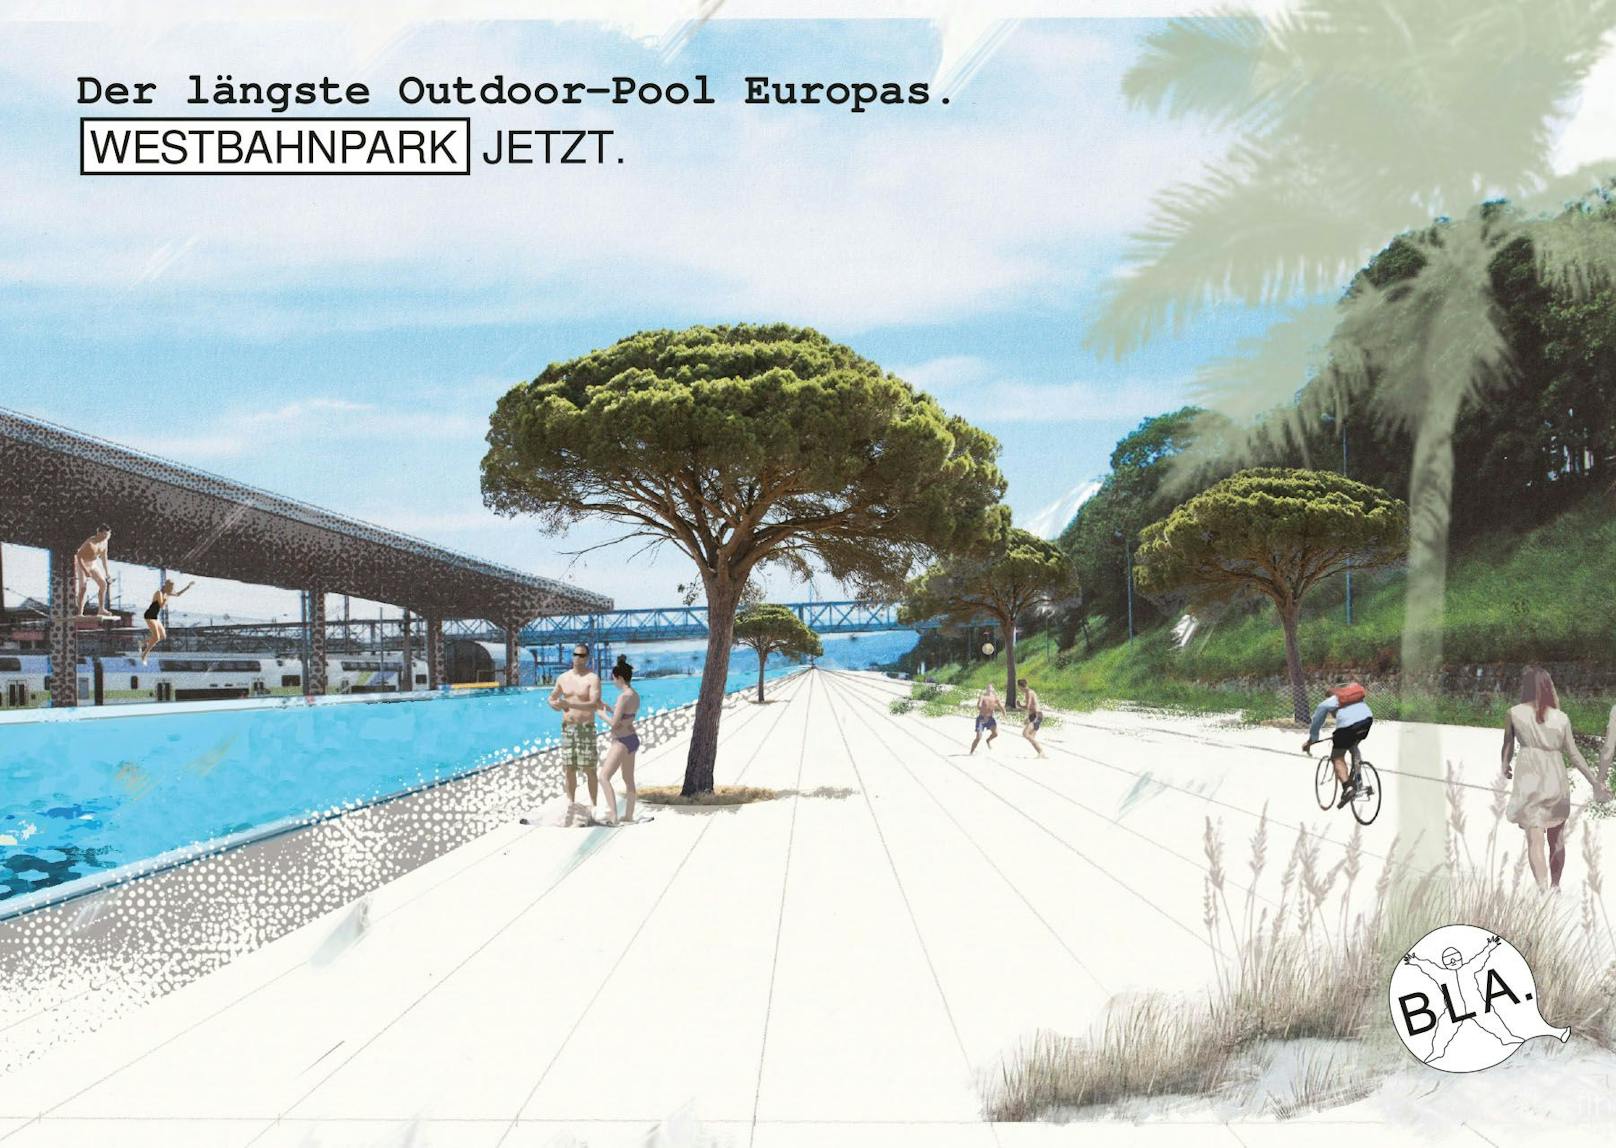 Das Projekt "Westbahnpark jetzt" will die 1,2 km lange Fläche von der Felberstraße bis zum Westbahnhof in einen Park verwandeln.&nbsp;Platz wäre auch für ein 1 km langes Mega-Pool.